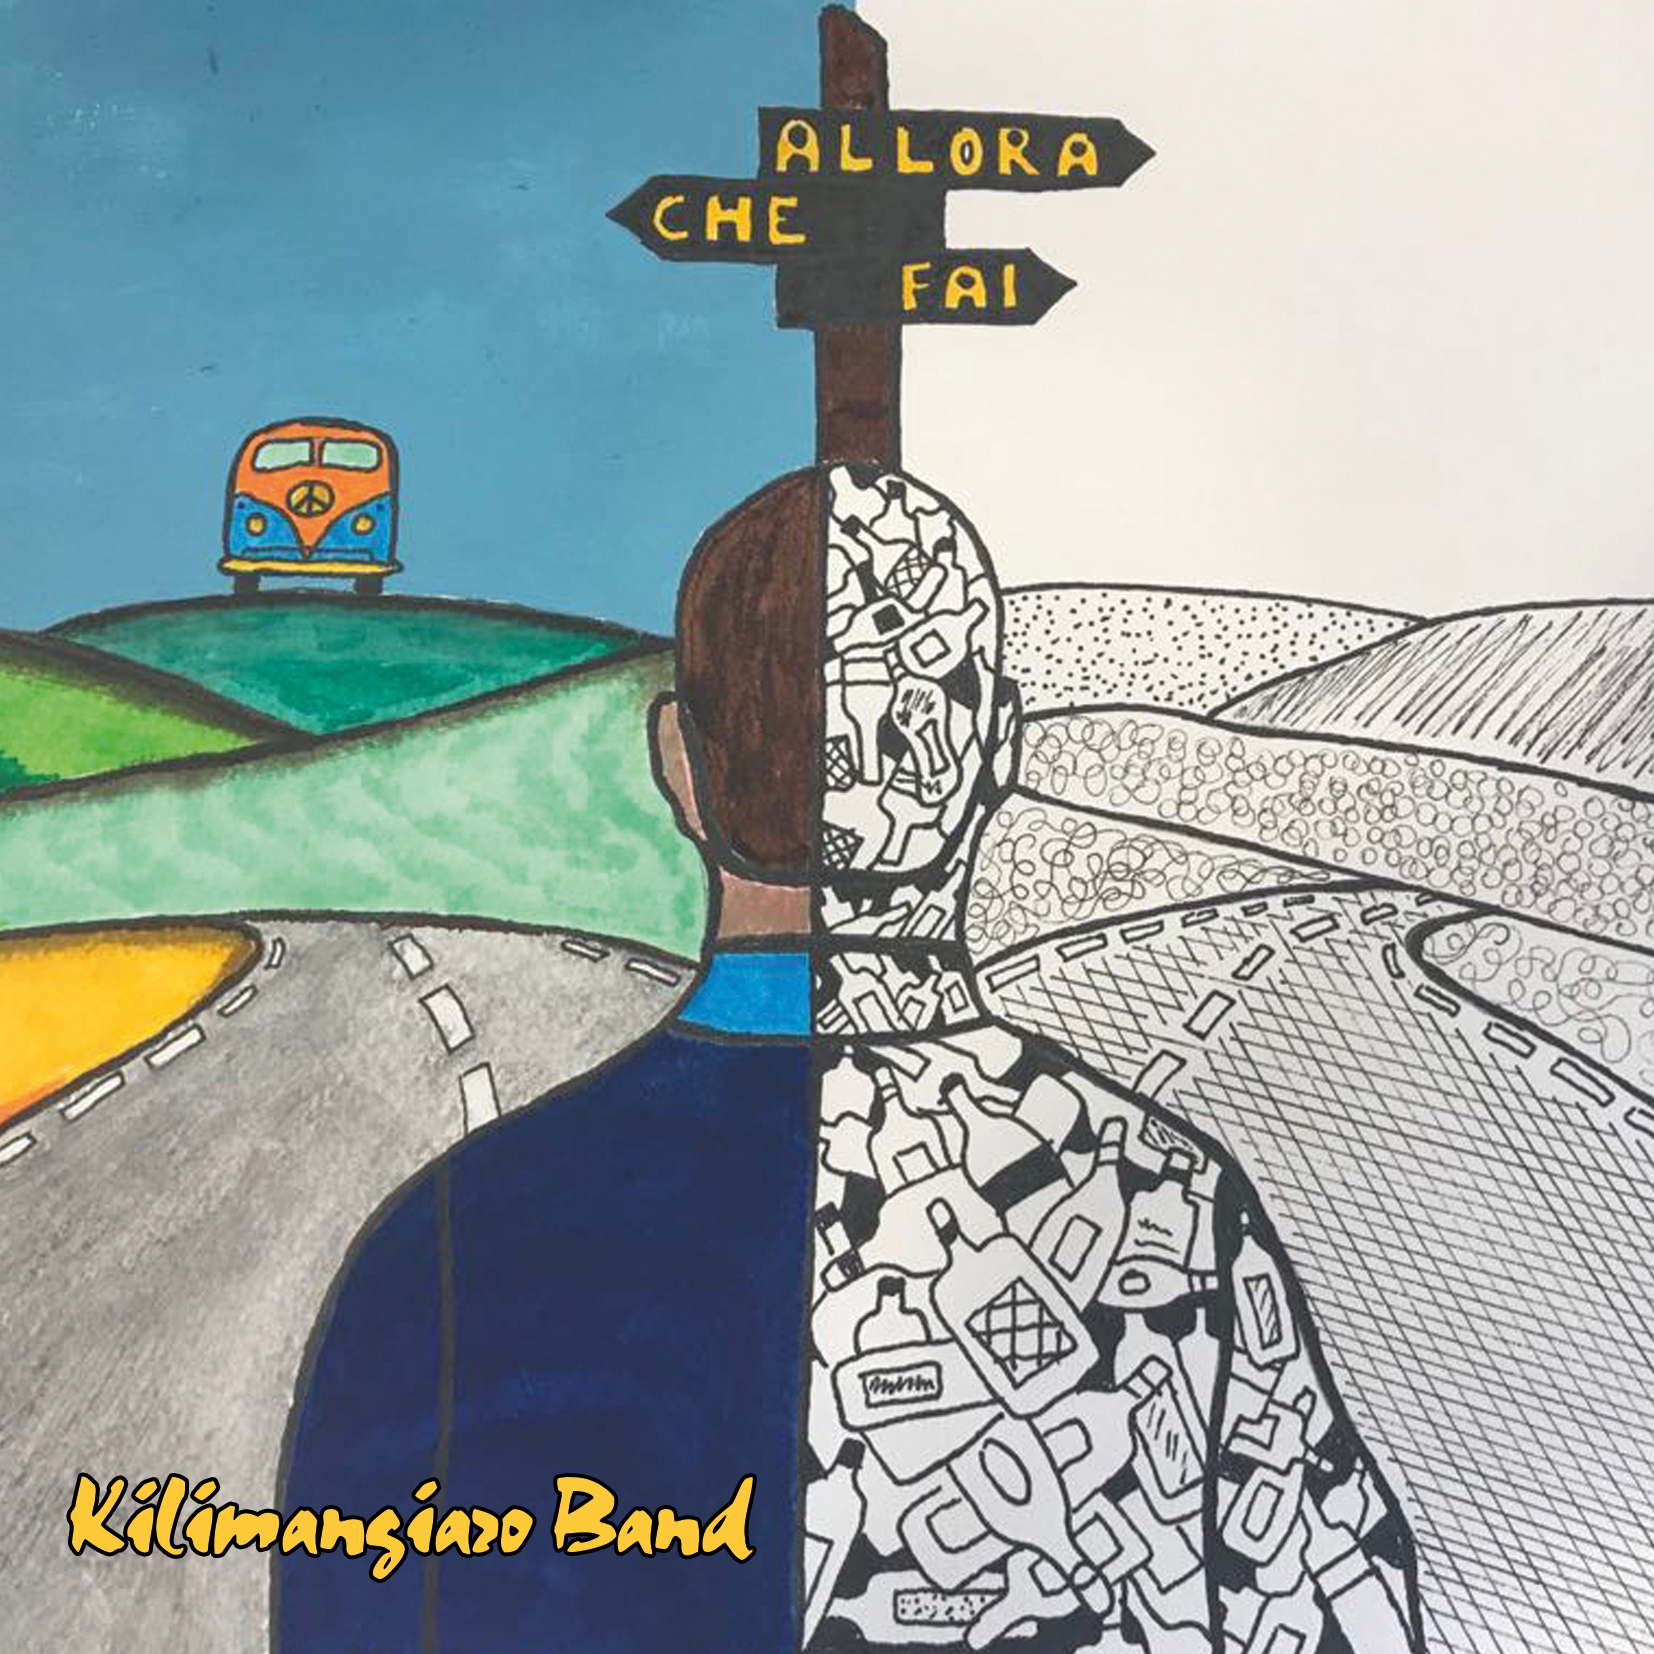 #chiguidanonbeve e il  singolo della Kilimangiaro Band “Allora che fai”